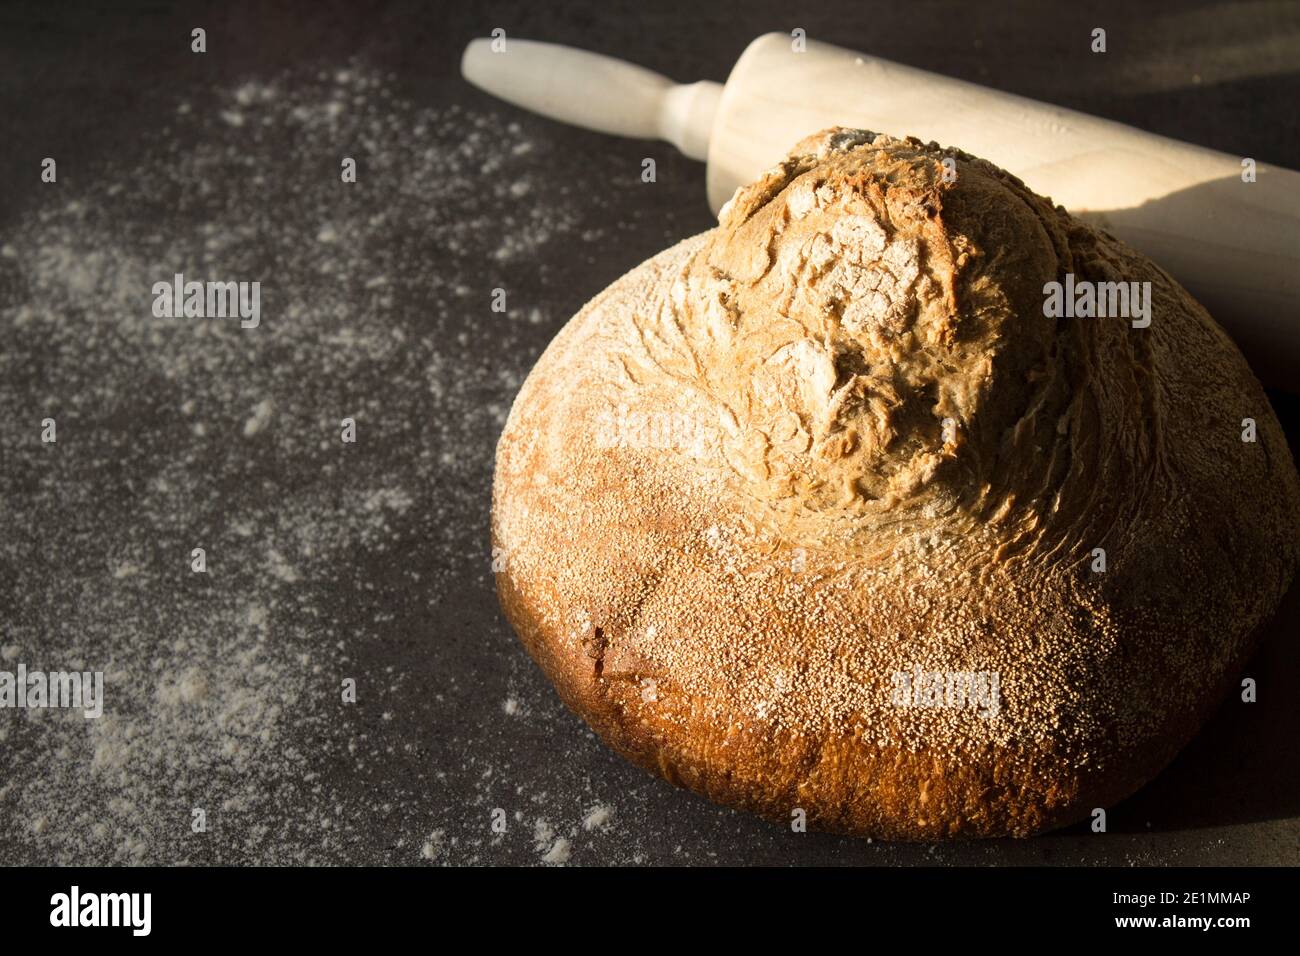 Pan artesano recién horneado sobre una mesa. Fondo gris oscuro con espacio de copia. Receta casera de pan de masa de harina. Foto de stock